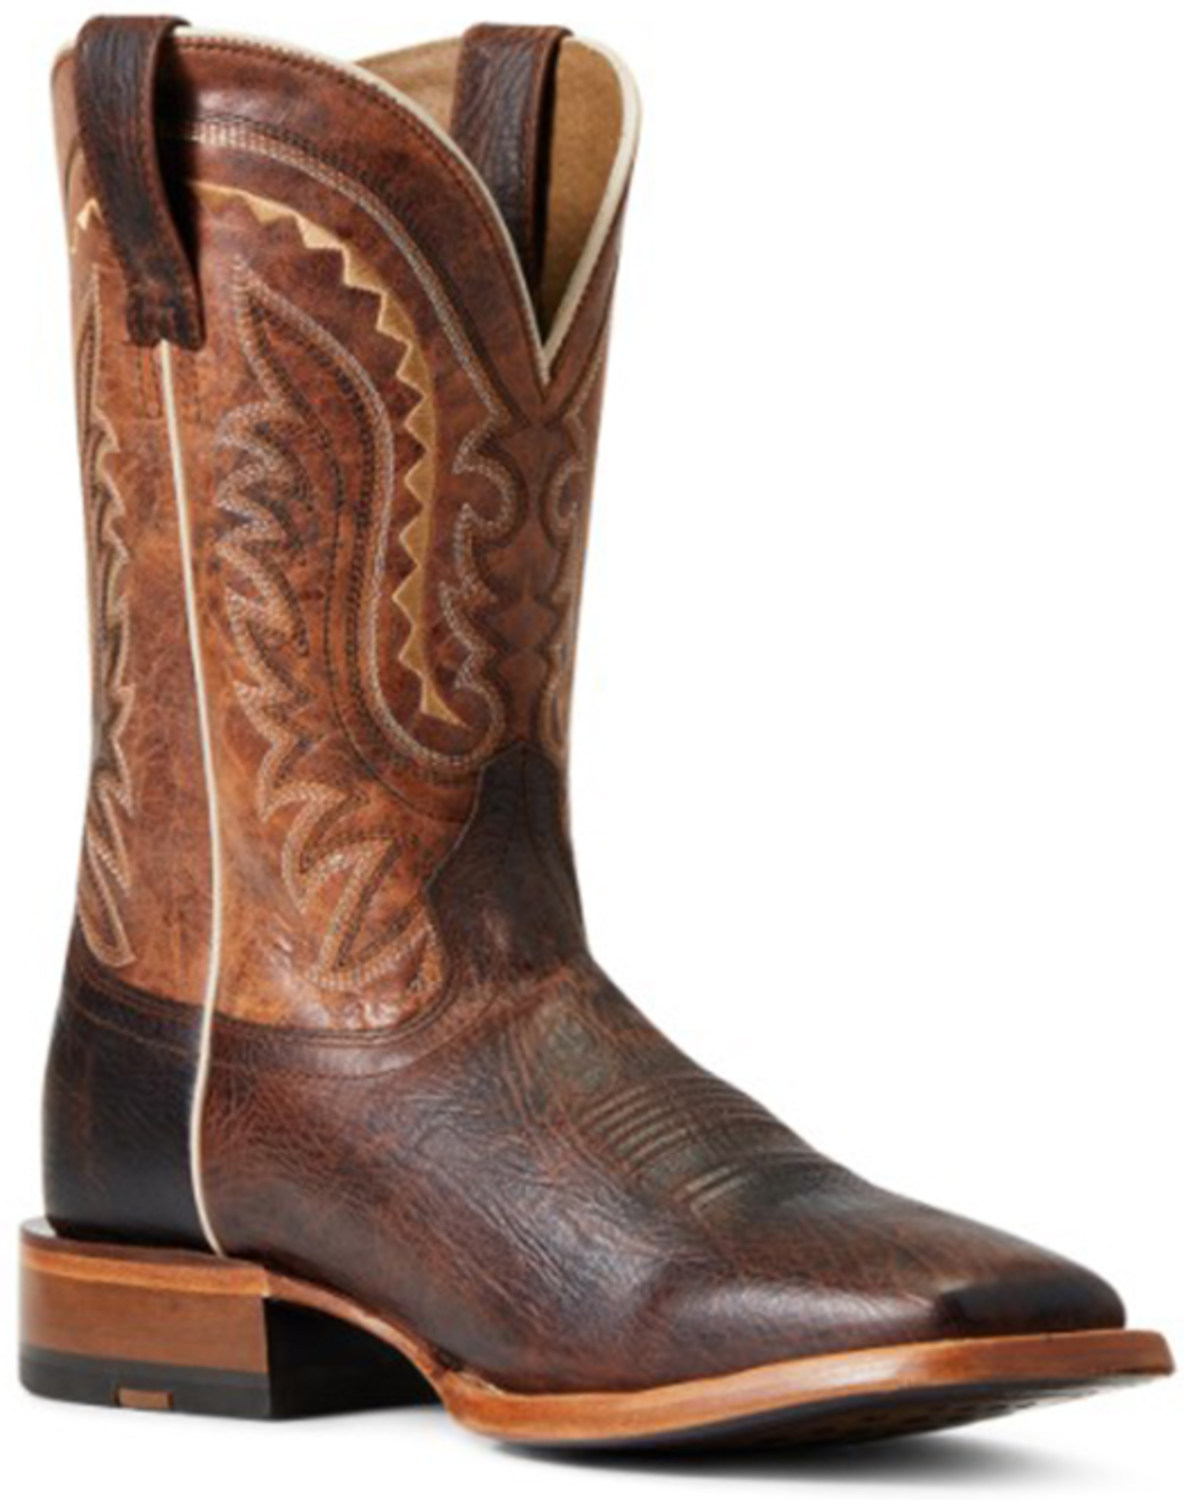 Ariat Men's Parada Tek Leather Western Boot - Broad Square Toe